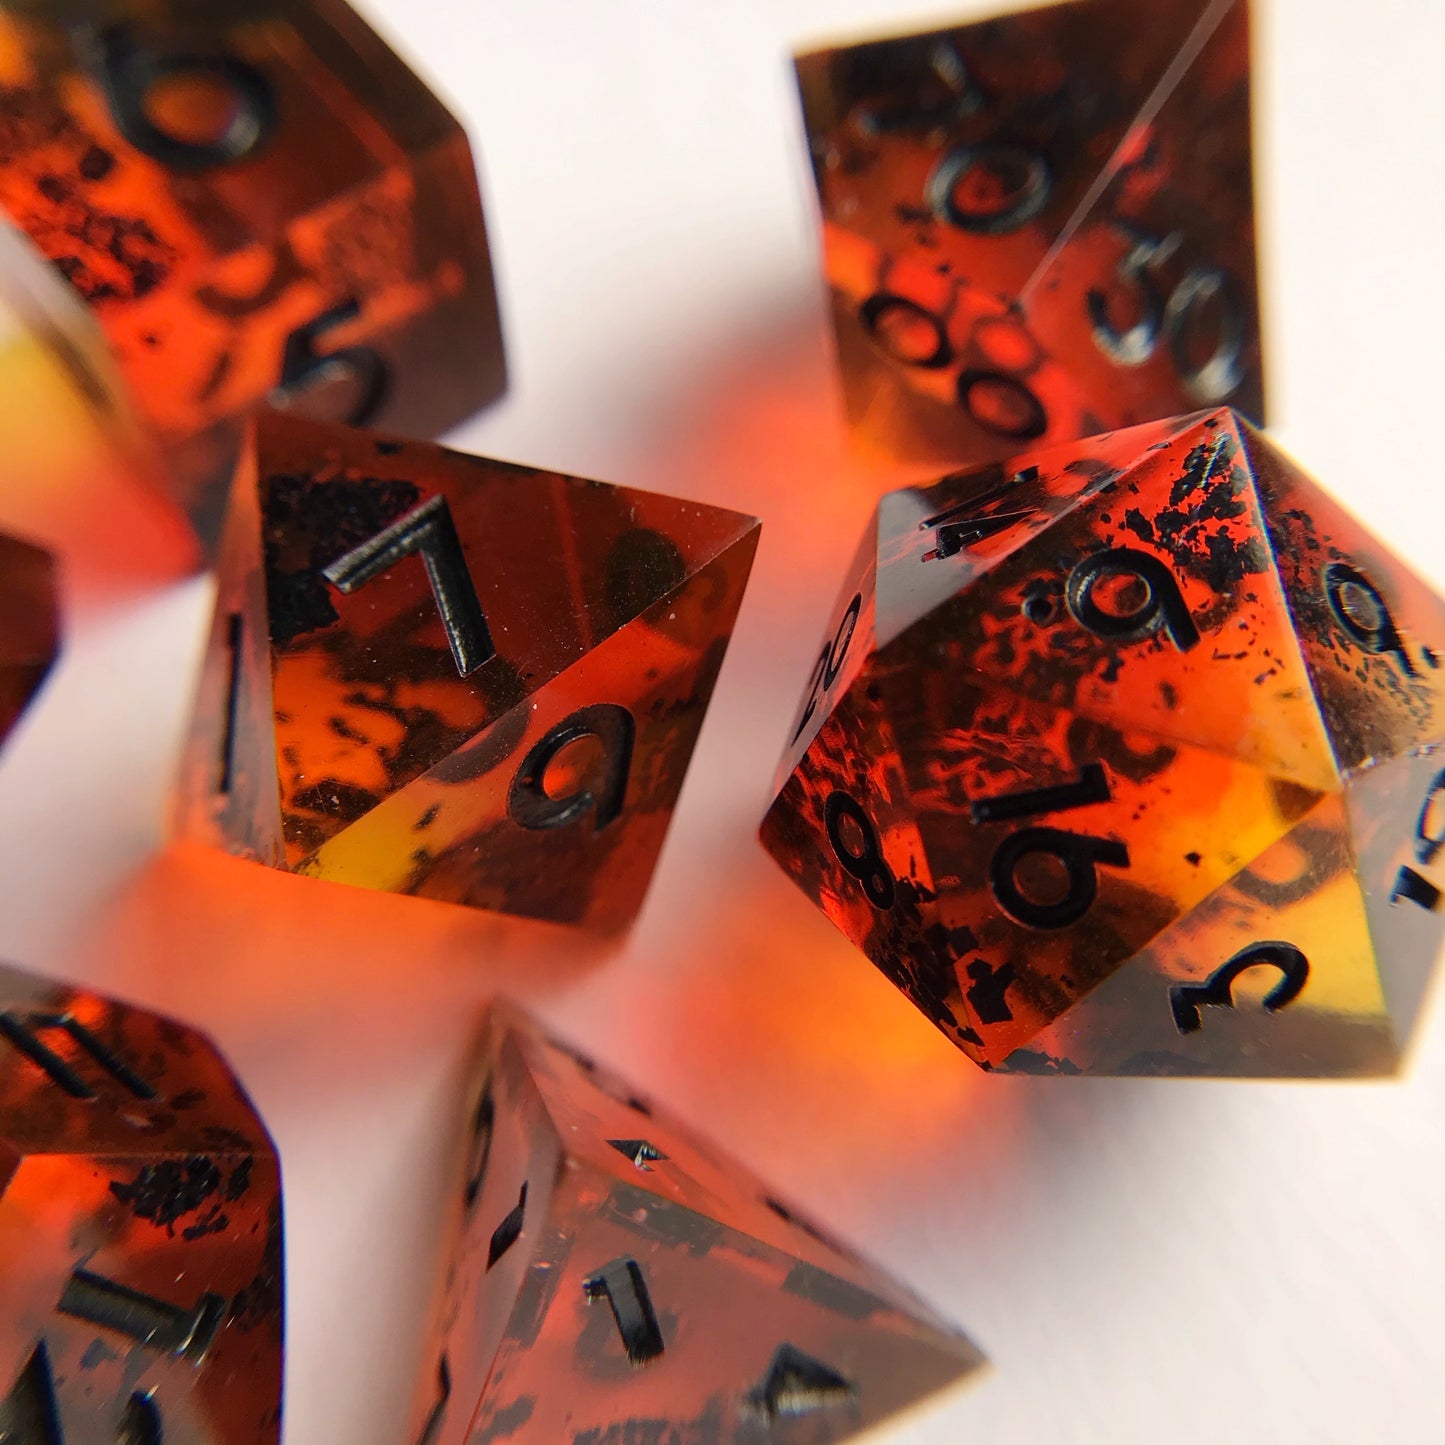 Vesuvius “Bright Red” – 7-piece Polyhedral Dice Set